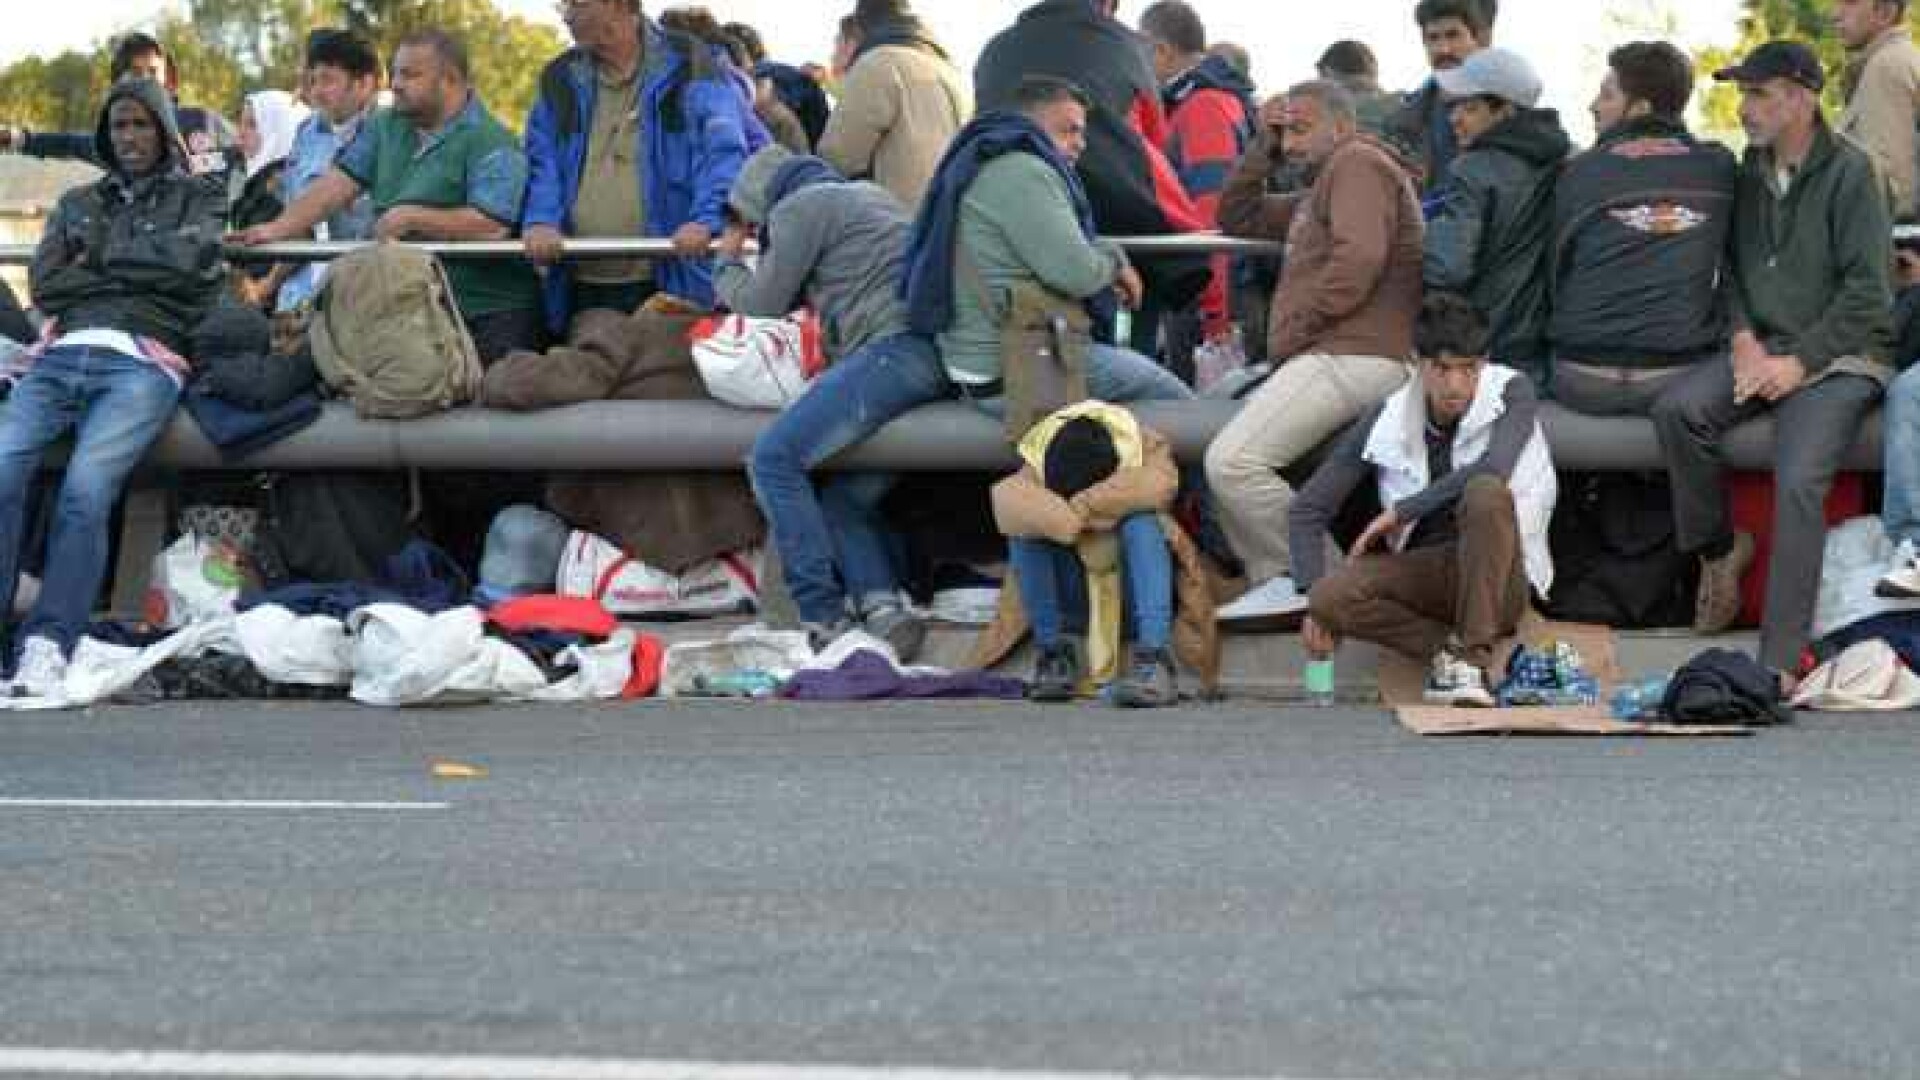 Val de refugiați așteptat în Uniunea Europeană. Avertismentul comisarului comisarul Ylva Johansson